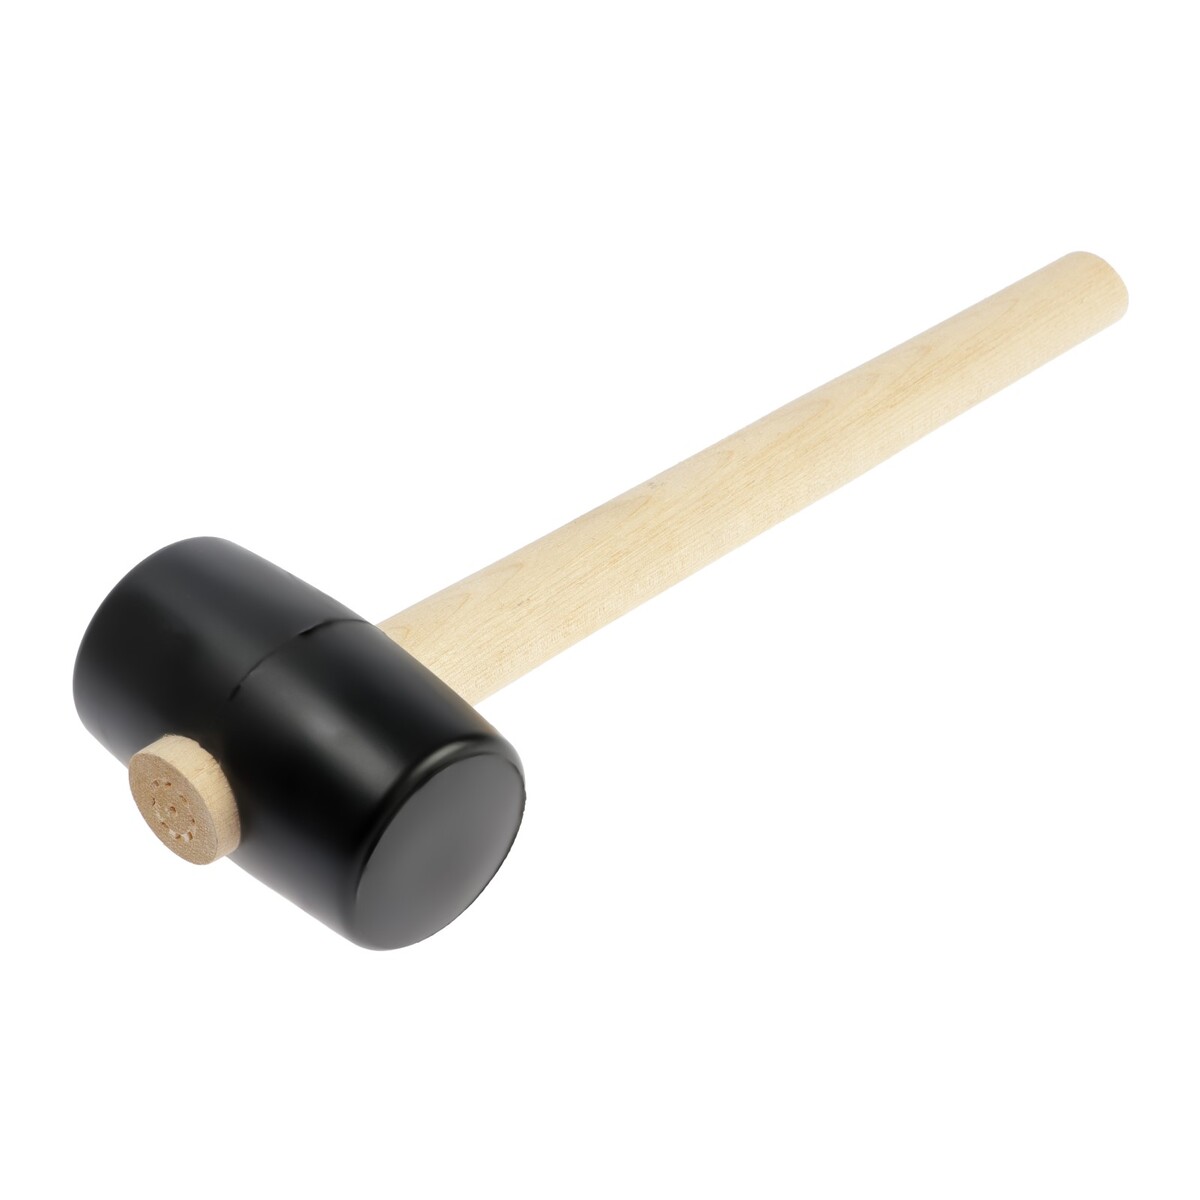 Киянка лом, деревянная рукоятка, черная резина, 55 мм, 300 г киянка тундра деревянная рукоятка черная резина 65 мм 680 г